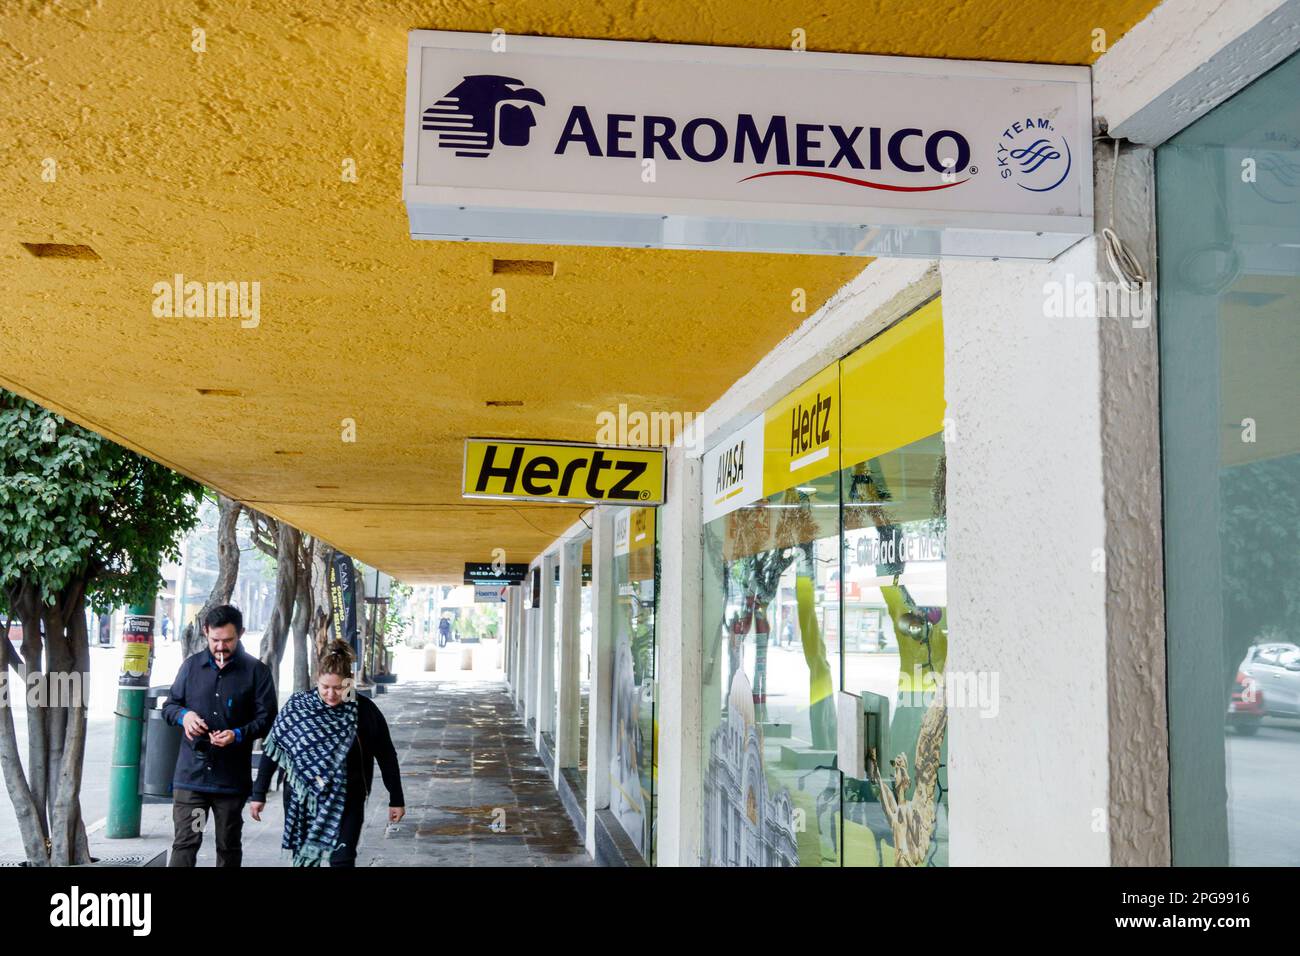 Mexiko-Stadt, Aeromexico Fluggesellschaften Hertz Mietwagen, Männer Männer, Frauen Frauen Frauen Frauen, Erwachsene, Bewohner, Paare, außerhalb Ex Stockfoto